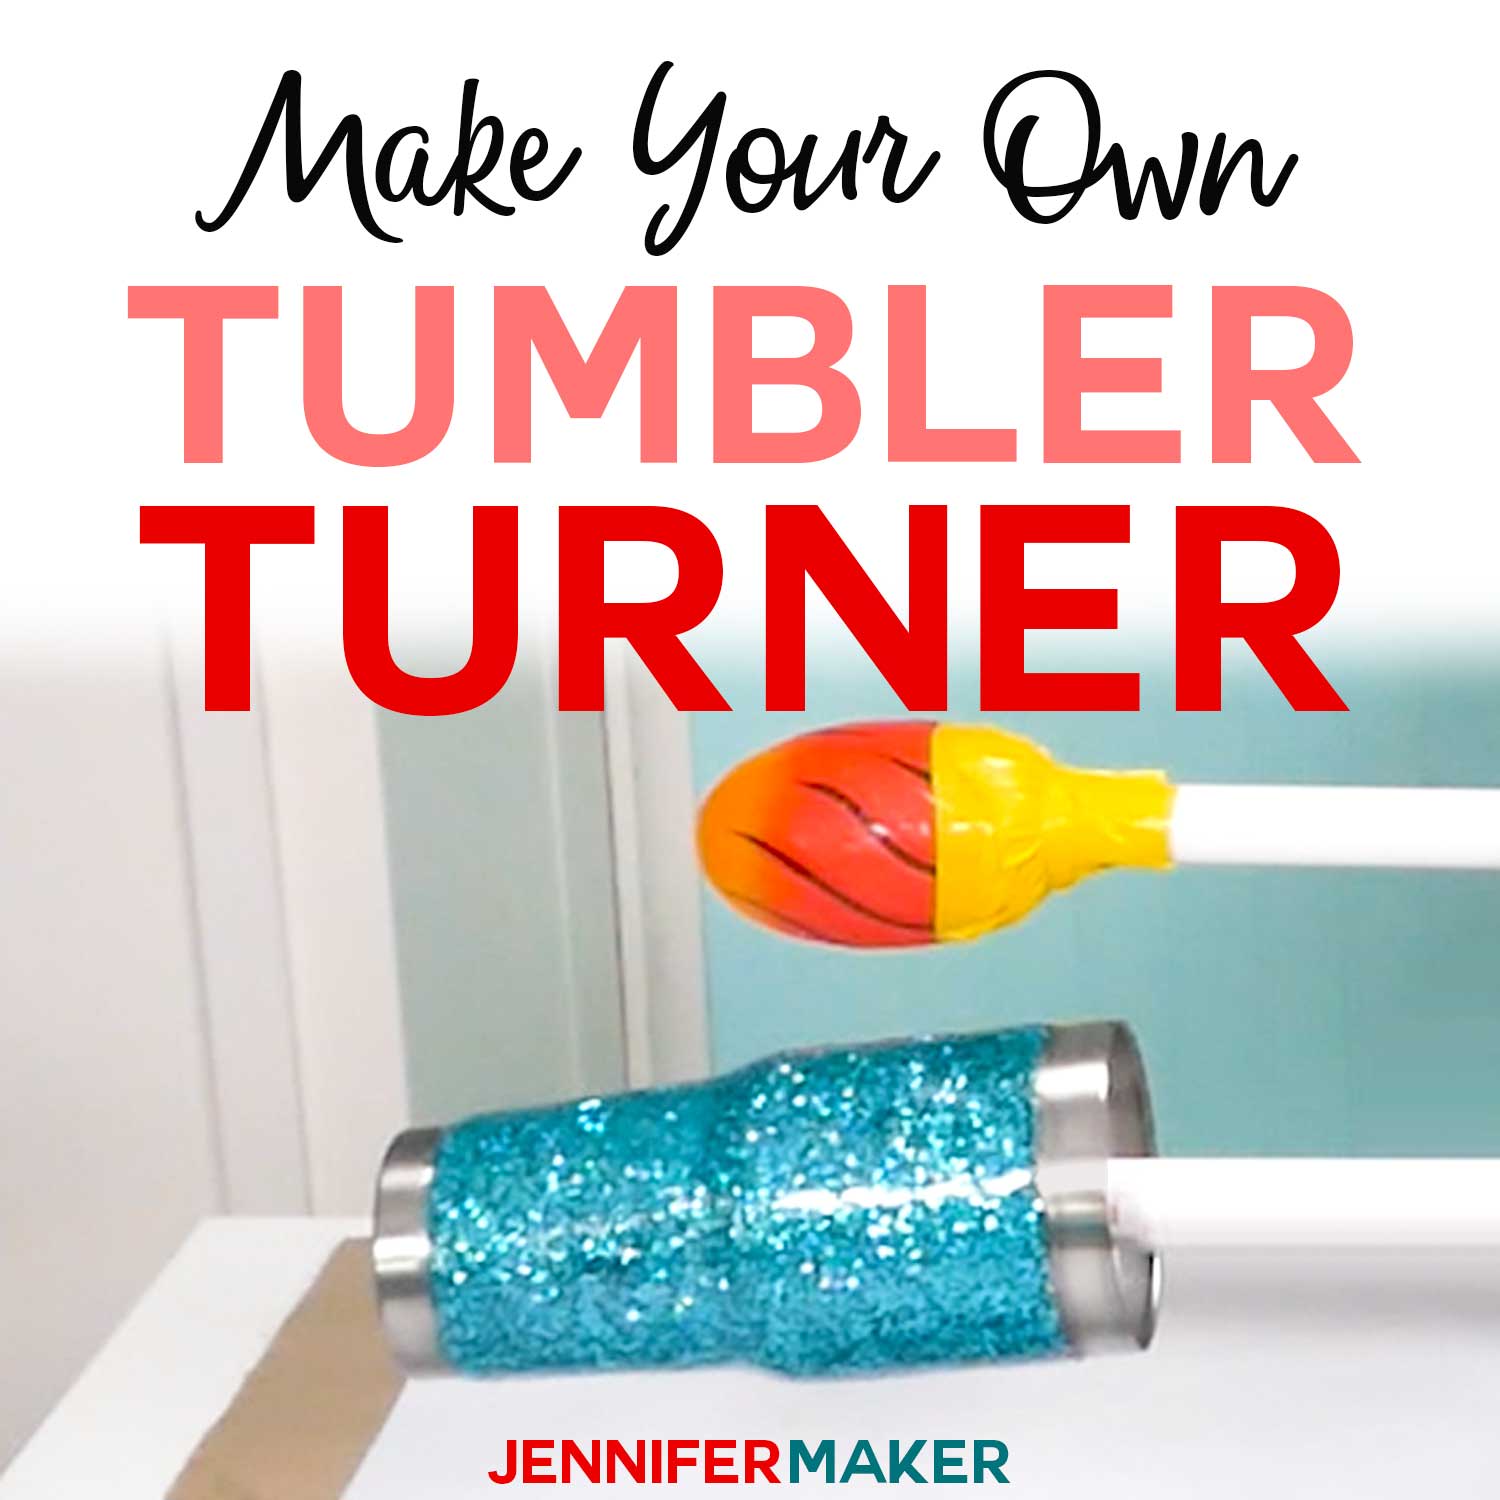 DIY Tumbler Turner: Two Cheap Ways to Make One!